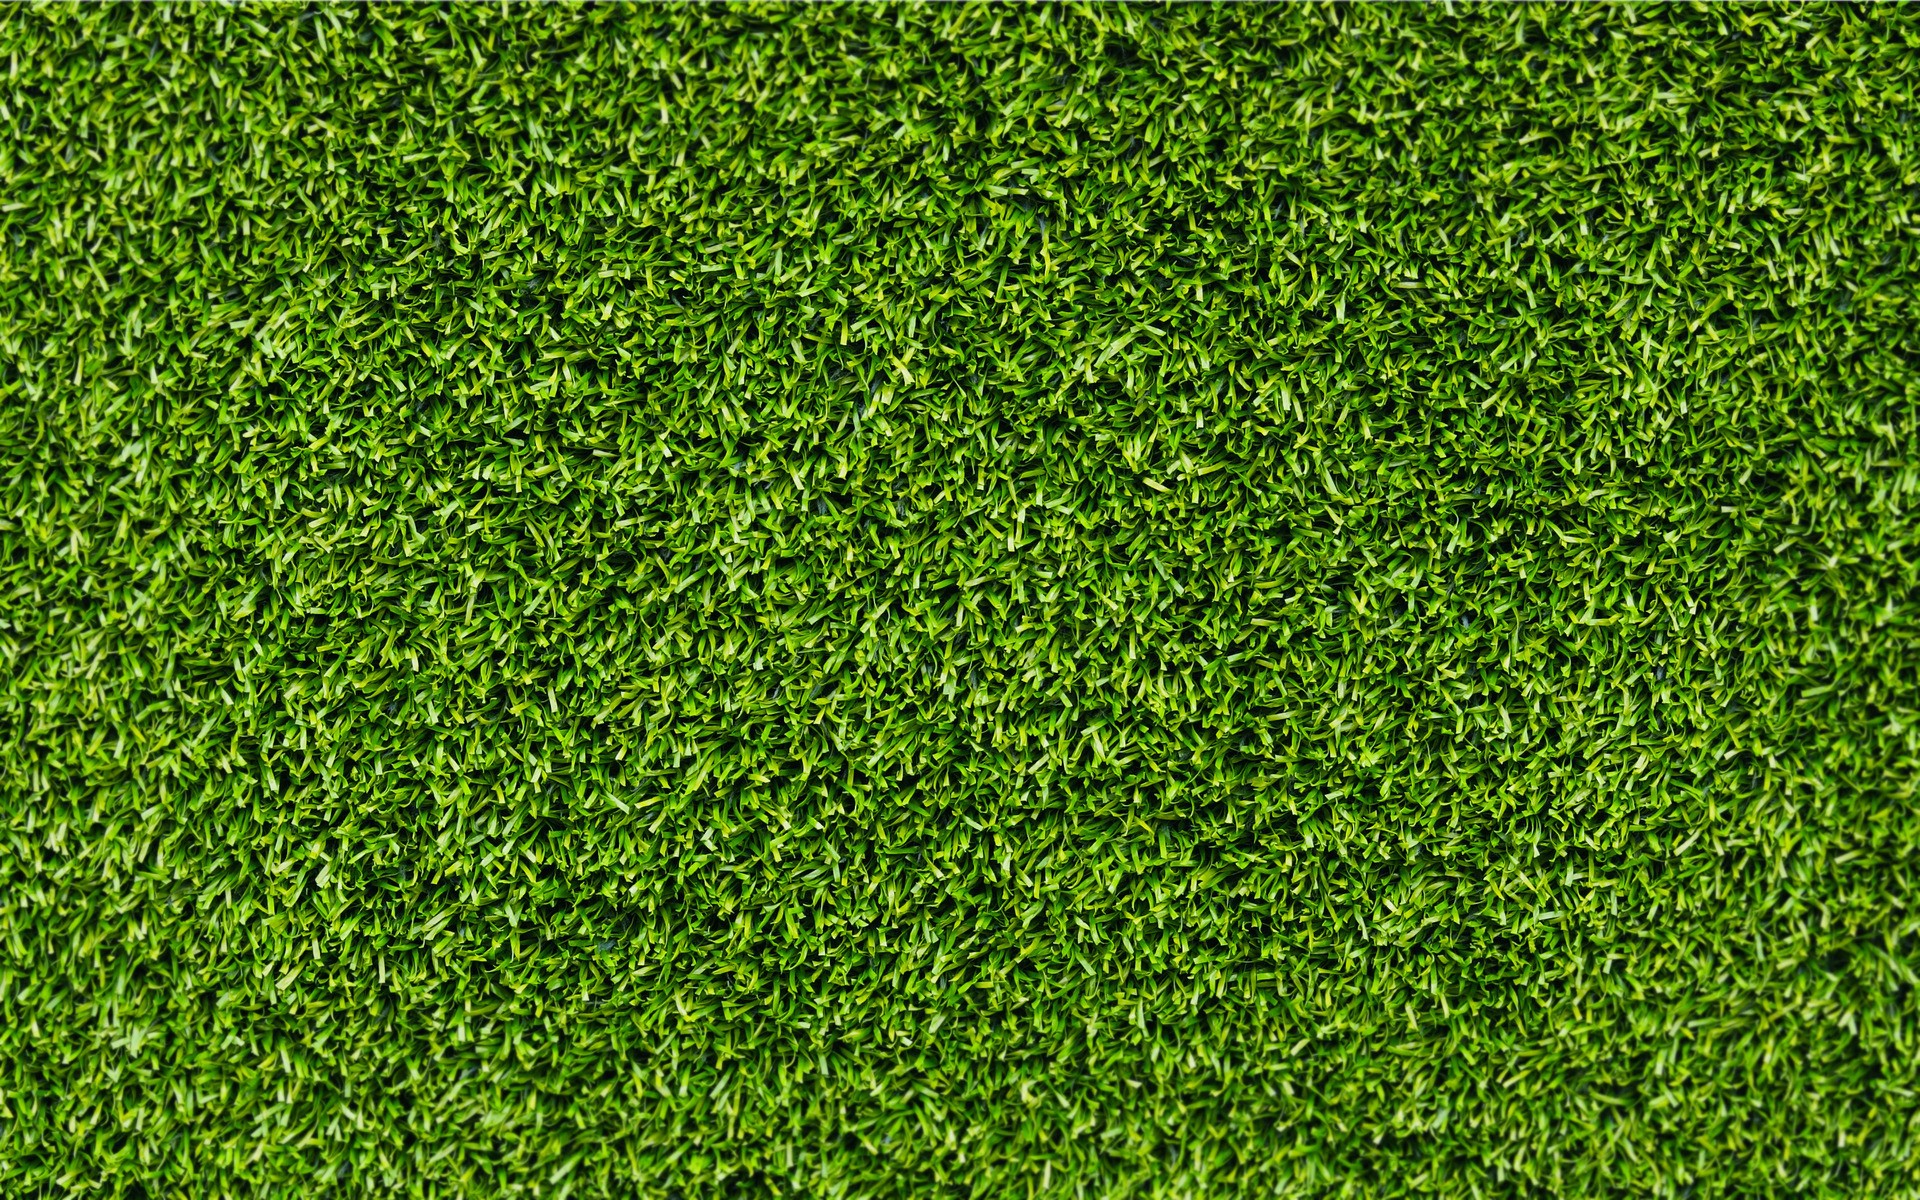 General 1920x1200 grass texture green